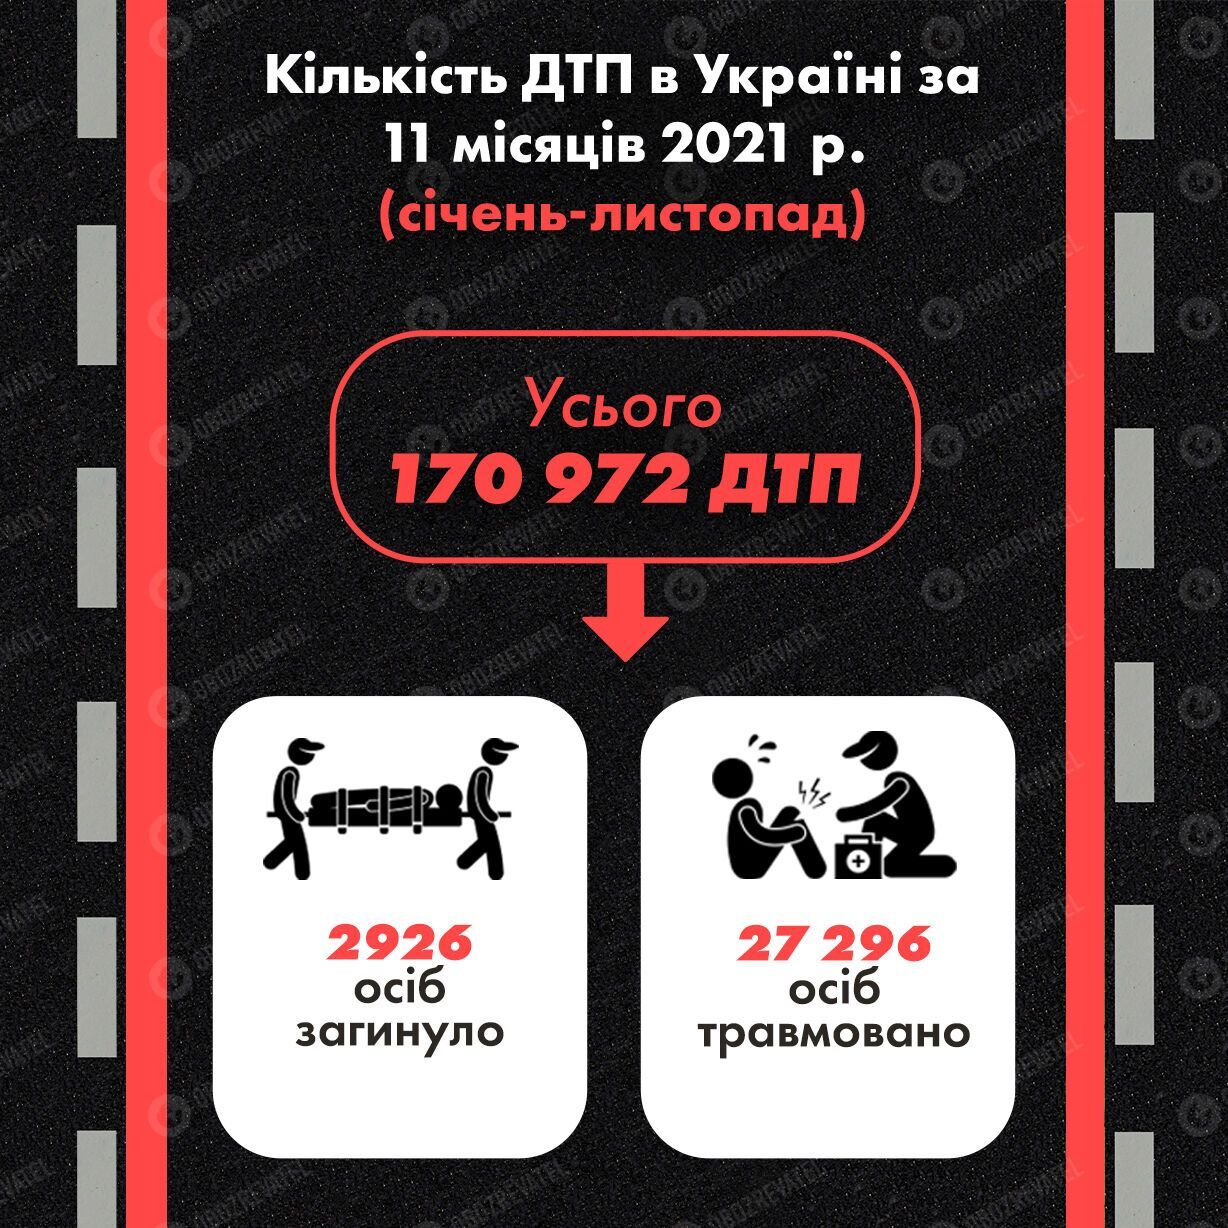 За 11 месяцев 2021 года в Украине произошло 170 972 ДТП